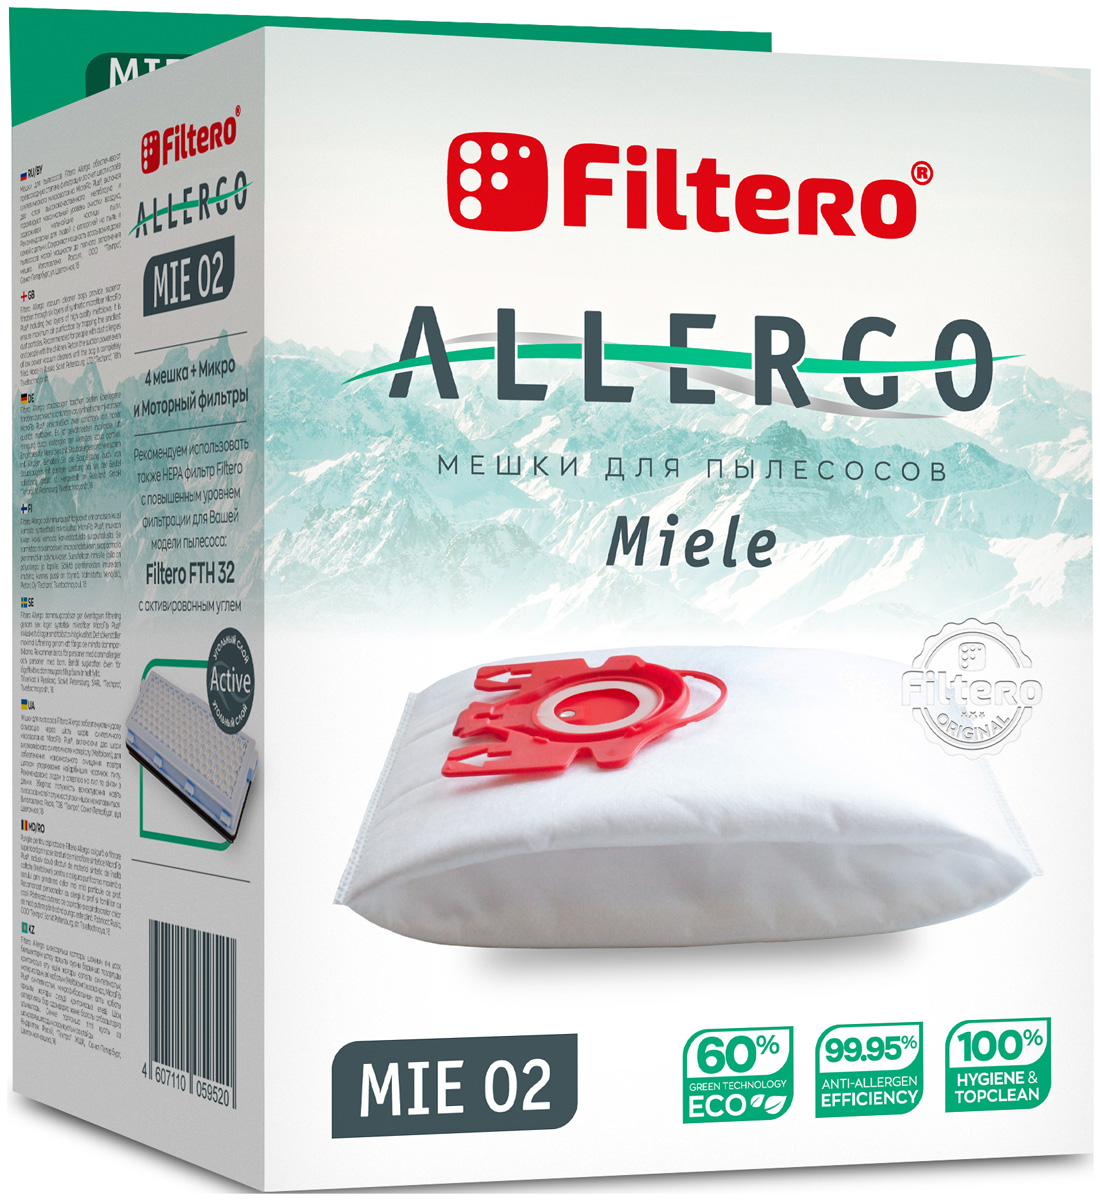 Пылесборники Filtero MIE 02 Allergo 4 шт. + моторный фильтр и микрофильтр